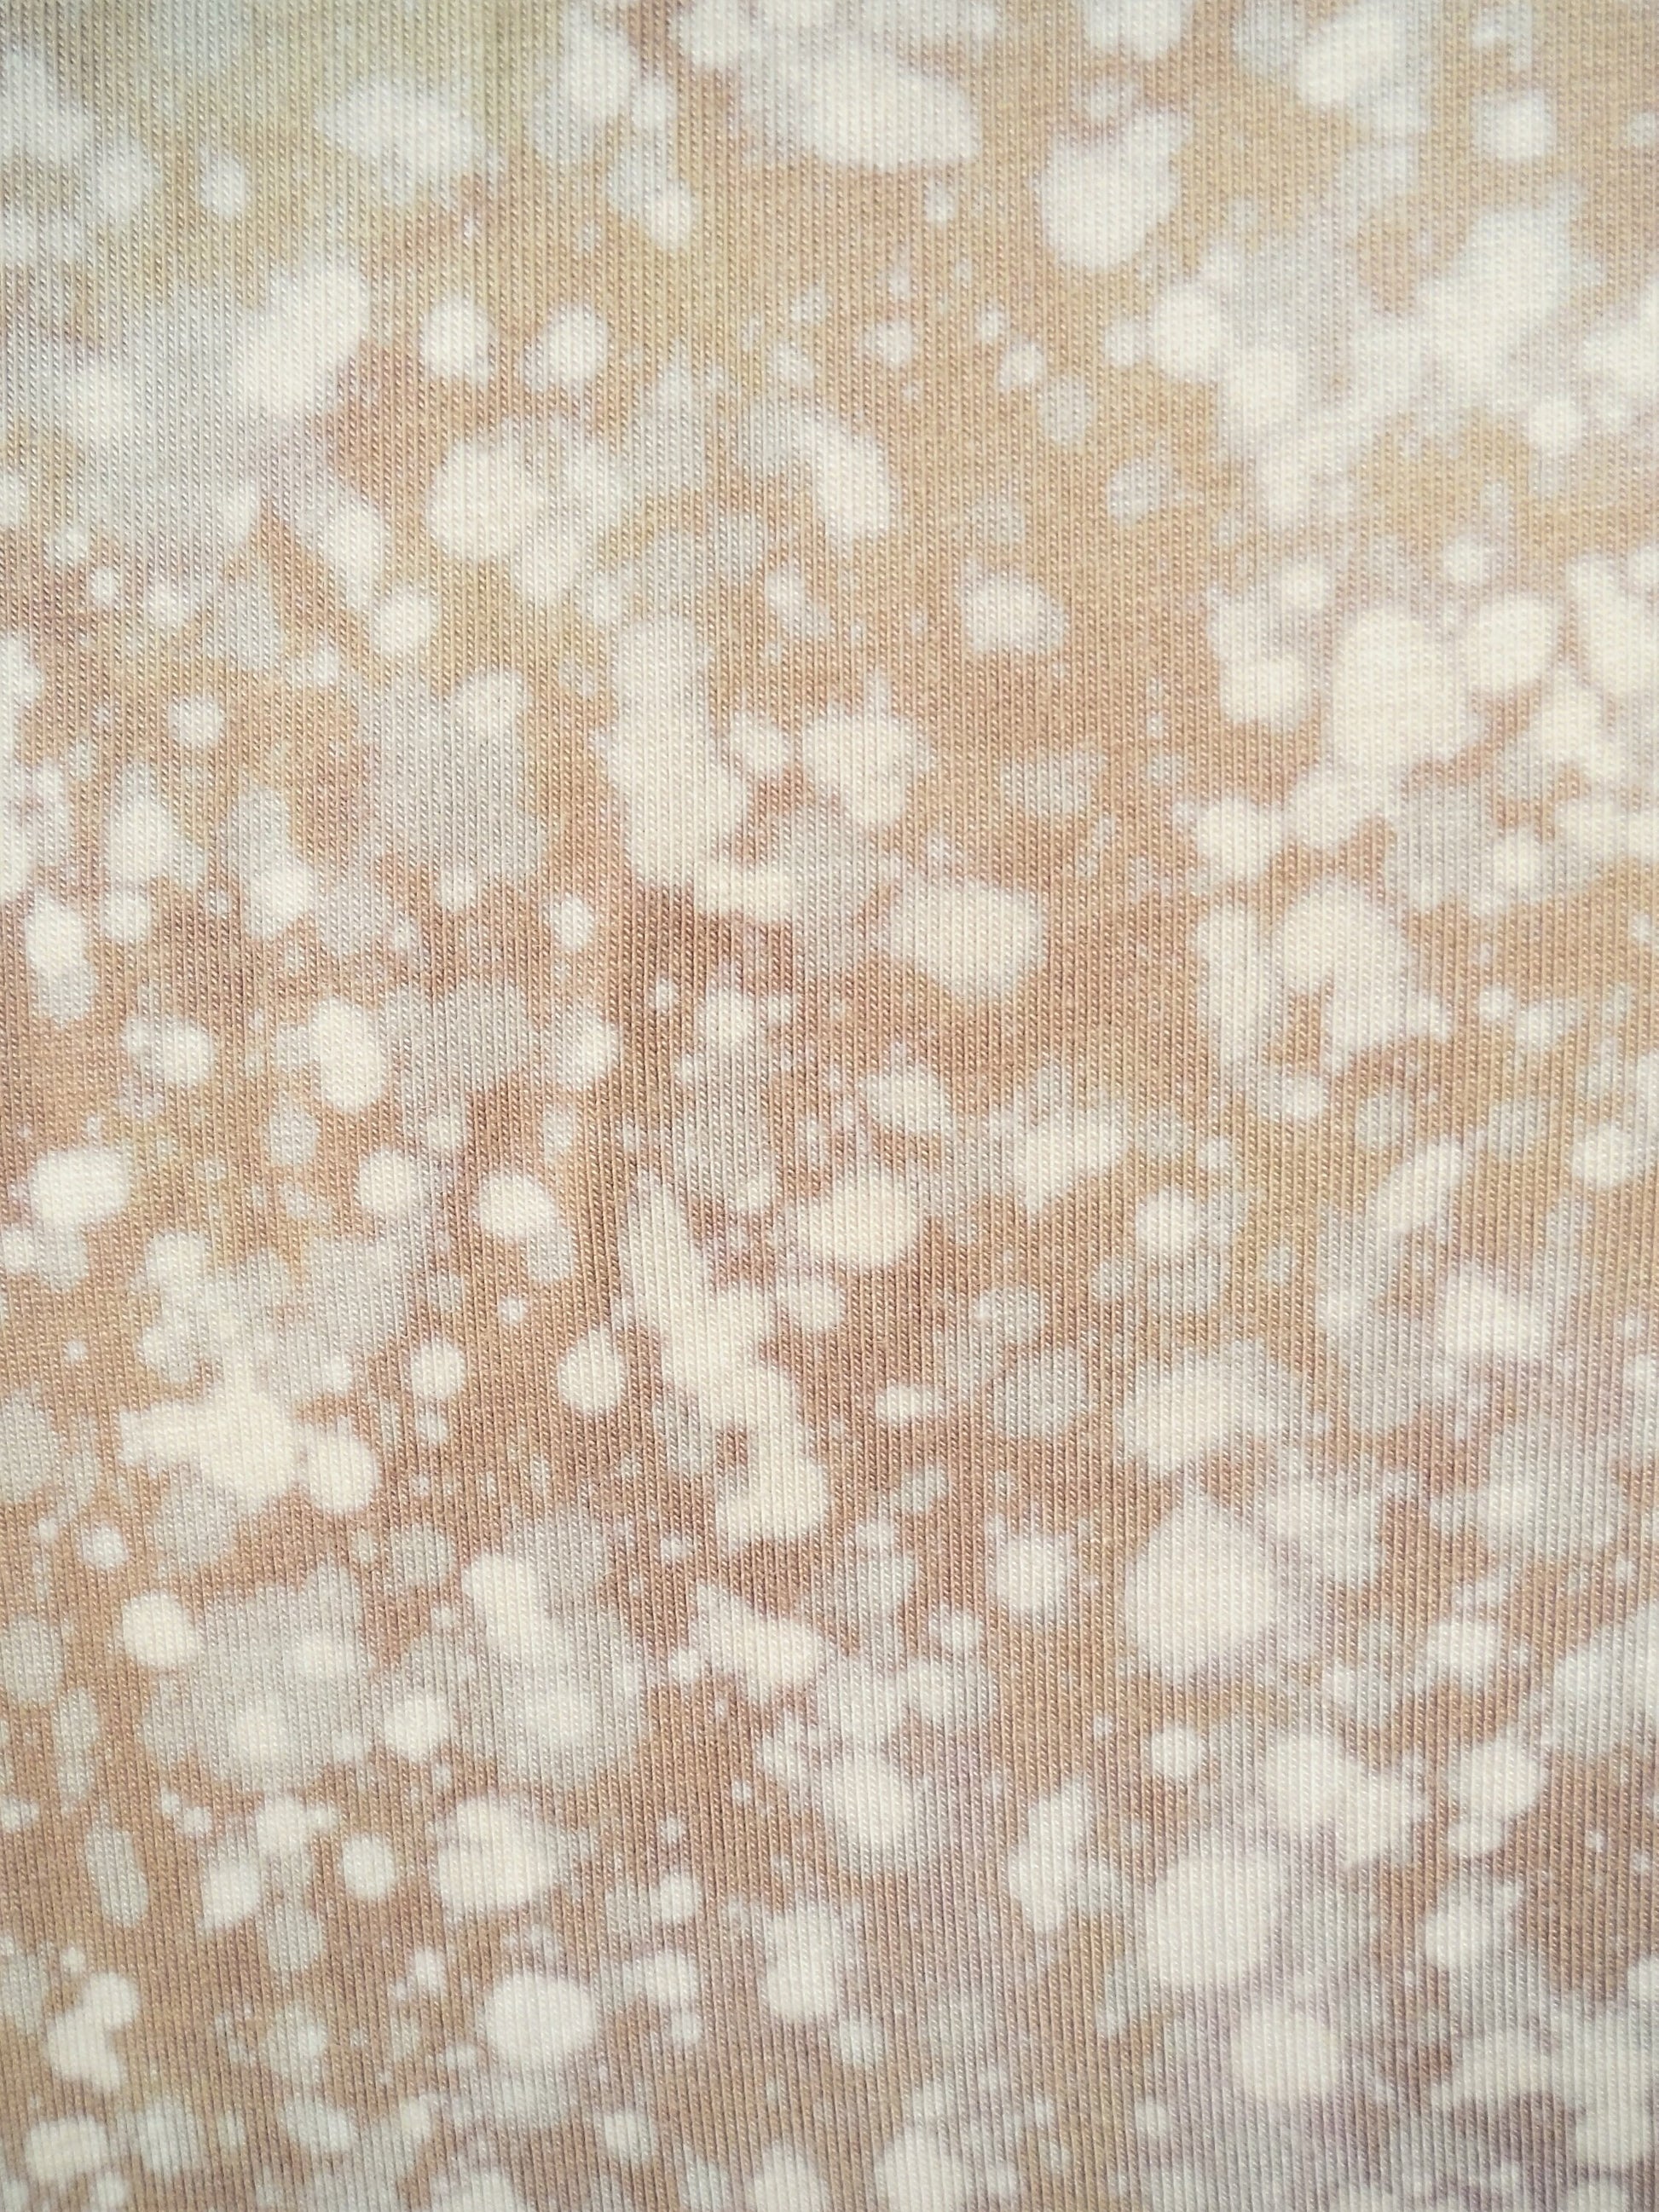 Hand Dyed Bleach Galaxy Leggings - Cream - Bare Canvas